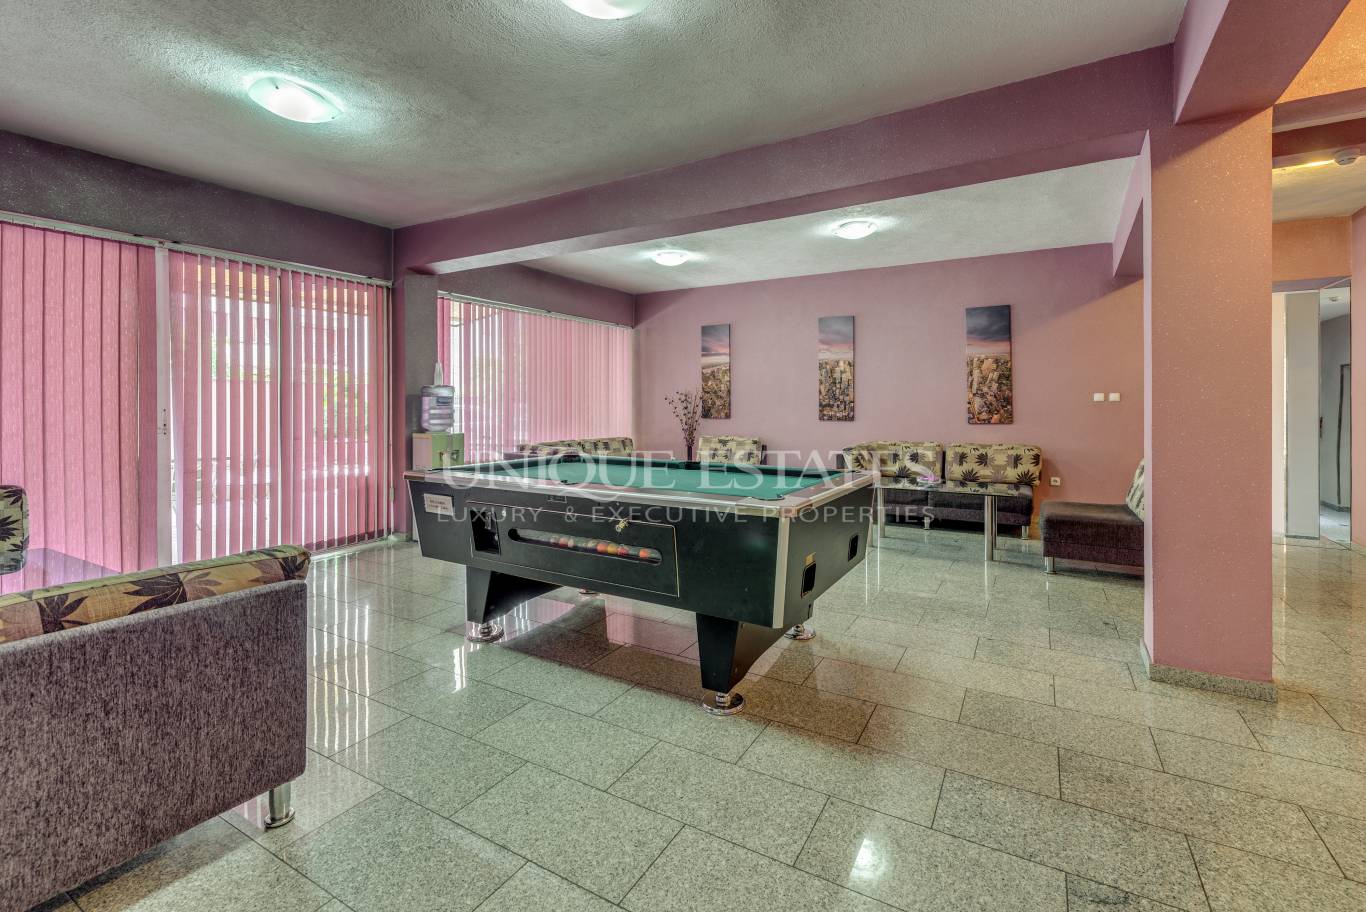 Хотел / Apartment house за продажба в София, Витоша - код на имота: K15300 - image 4